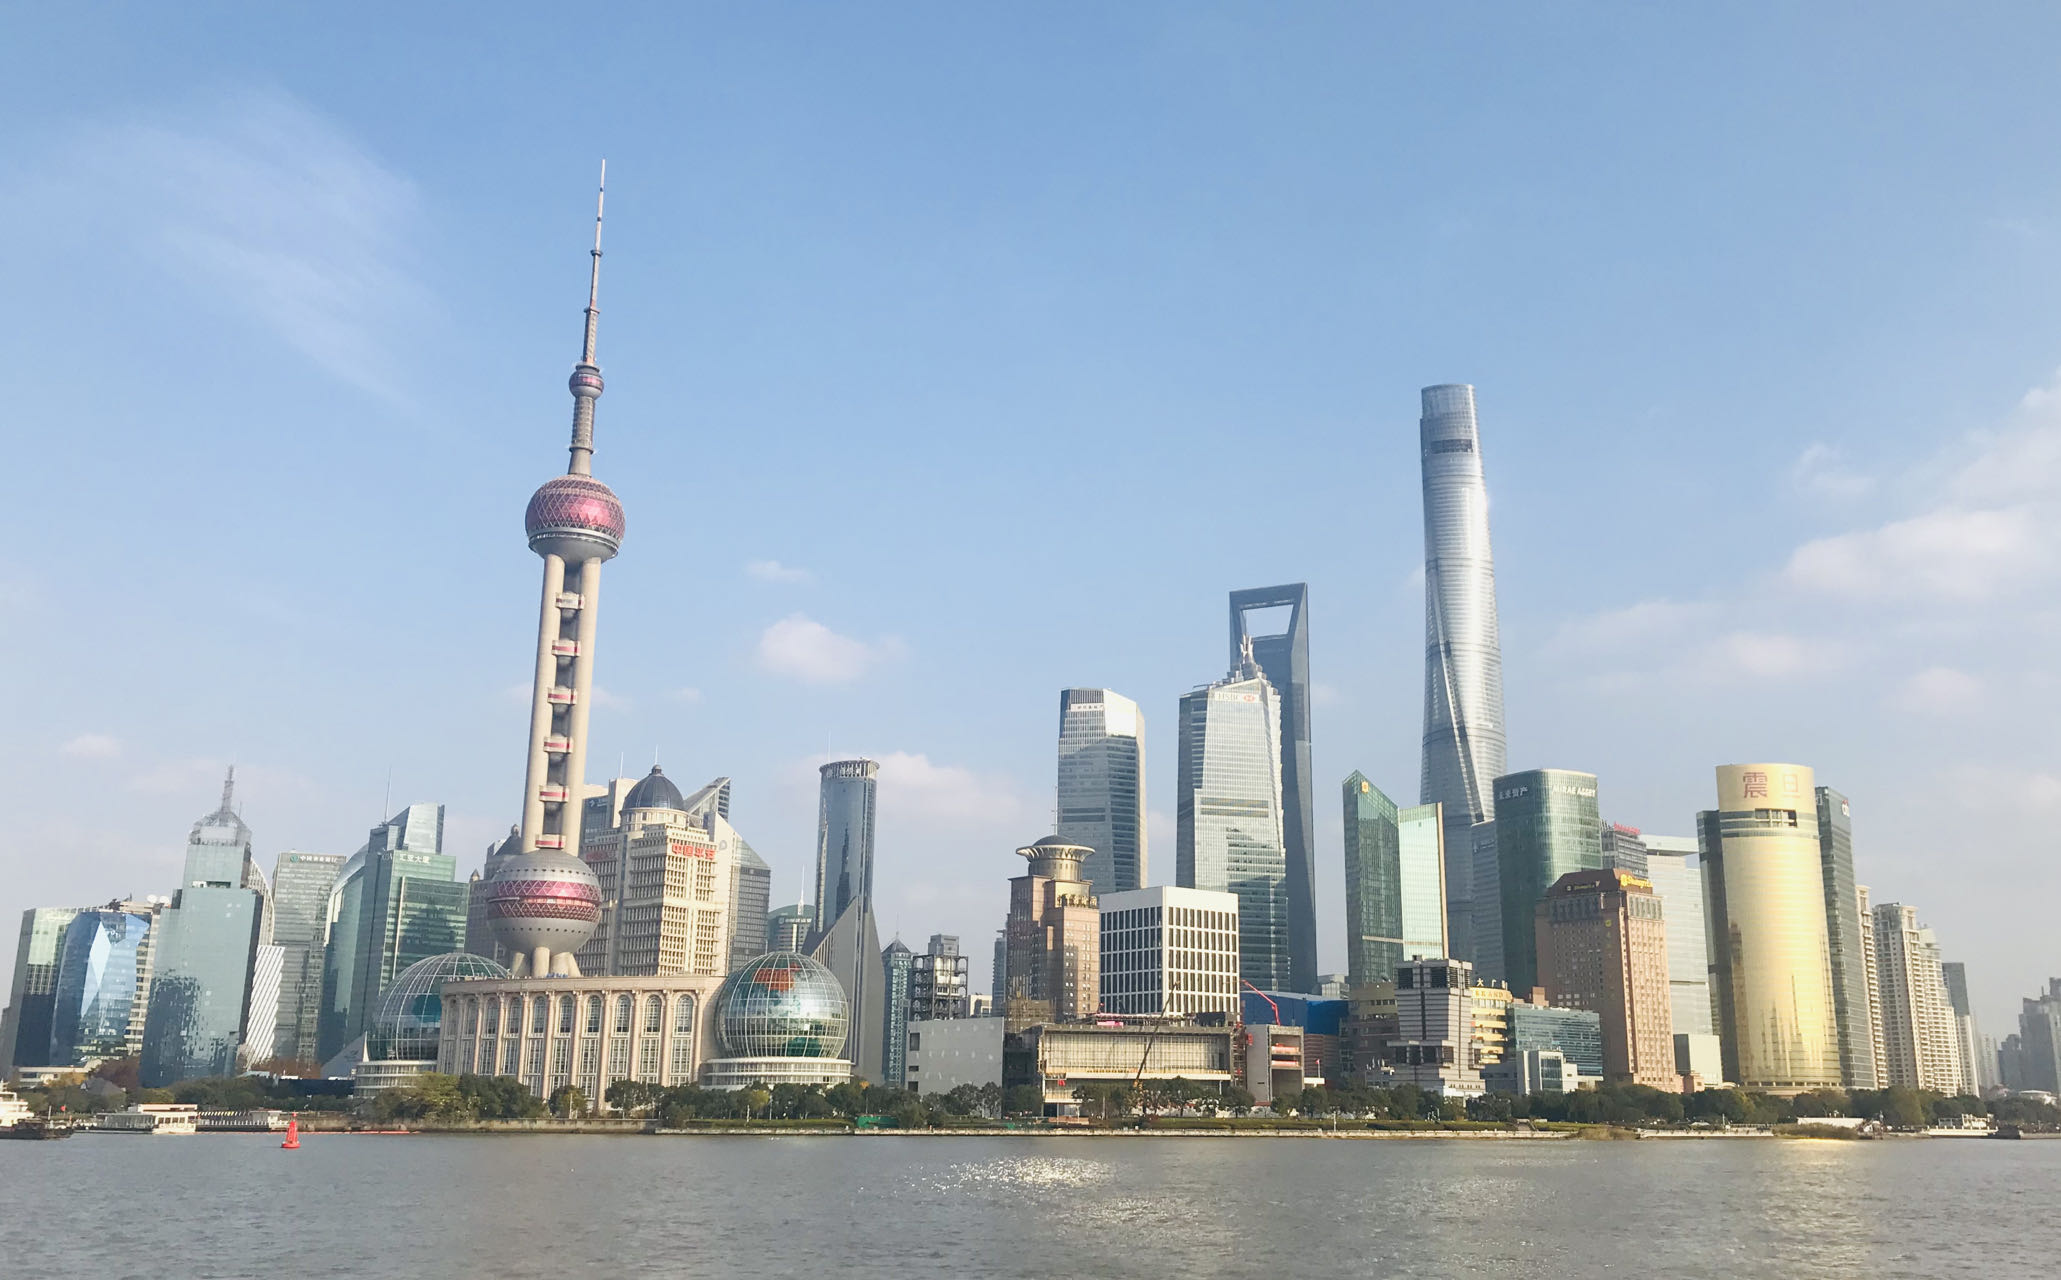 上海自贸区成立10周年 两家法院联合发布司法服务保障白皮书